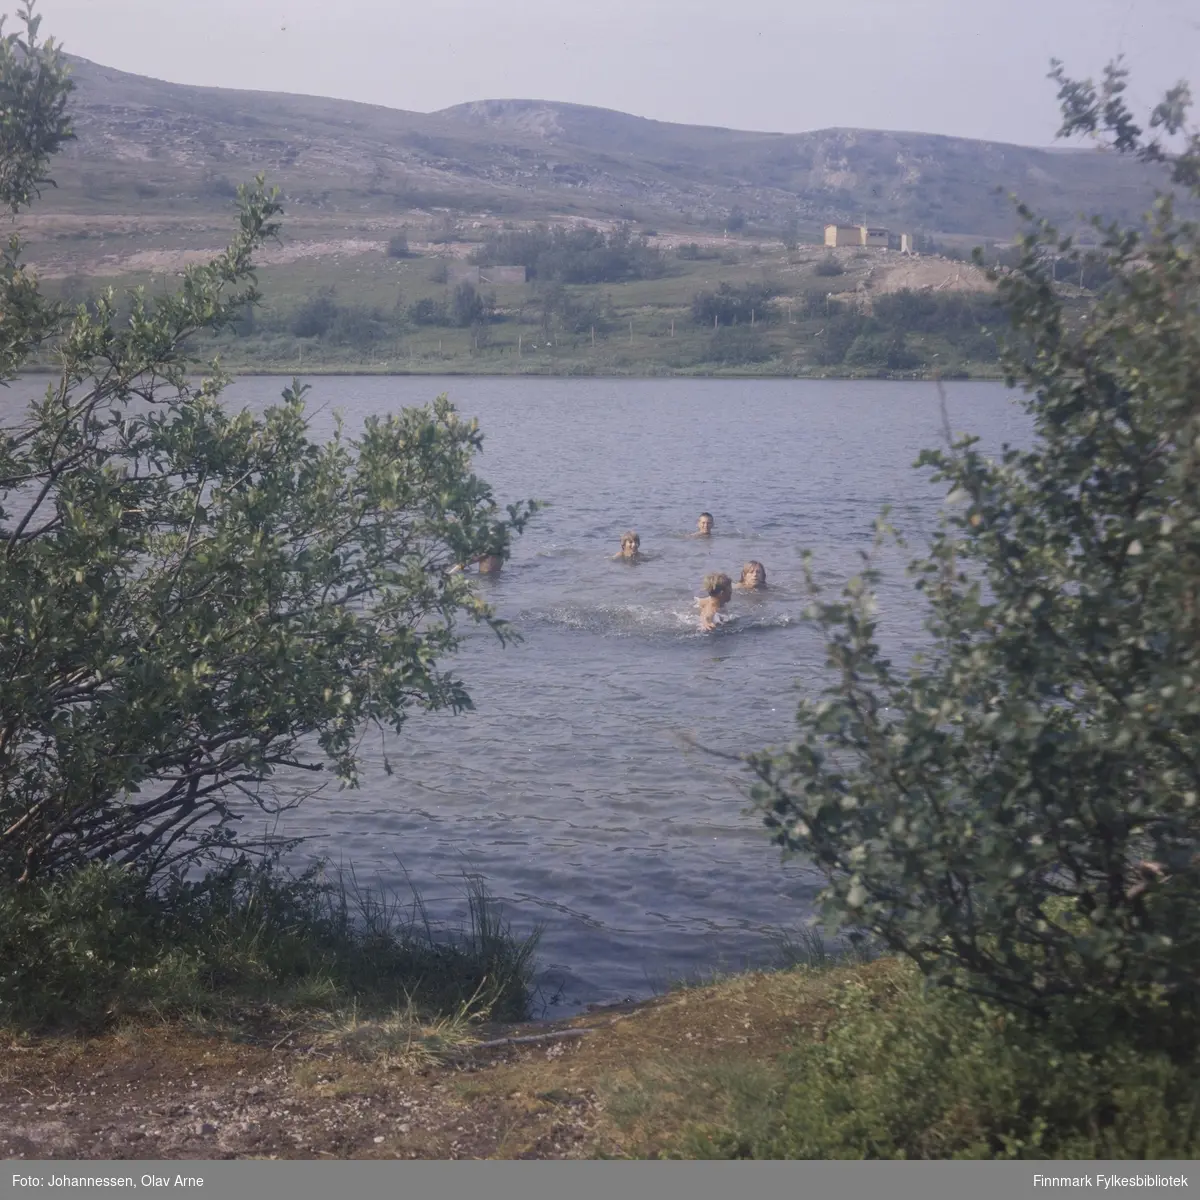 Foto av barn som bader i Jovannet i Båtsfjorddalen (Finnmark)

I bakgrunnen kan man se en gul hytte, muligens Klausenhytta 

Foto trolig tatt på 1960/70-tallet